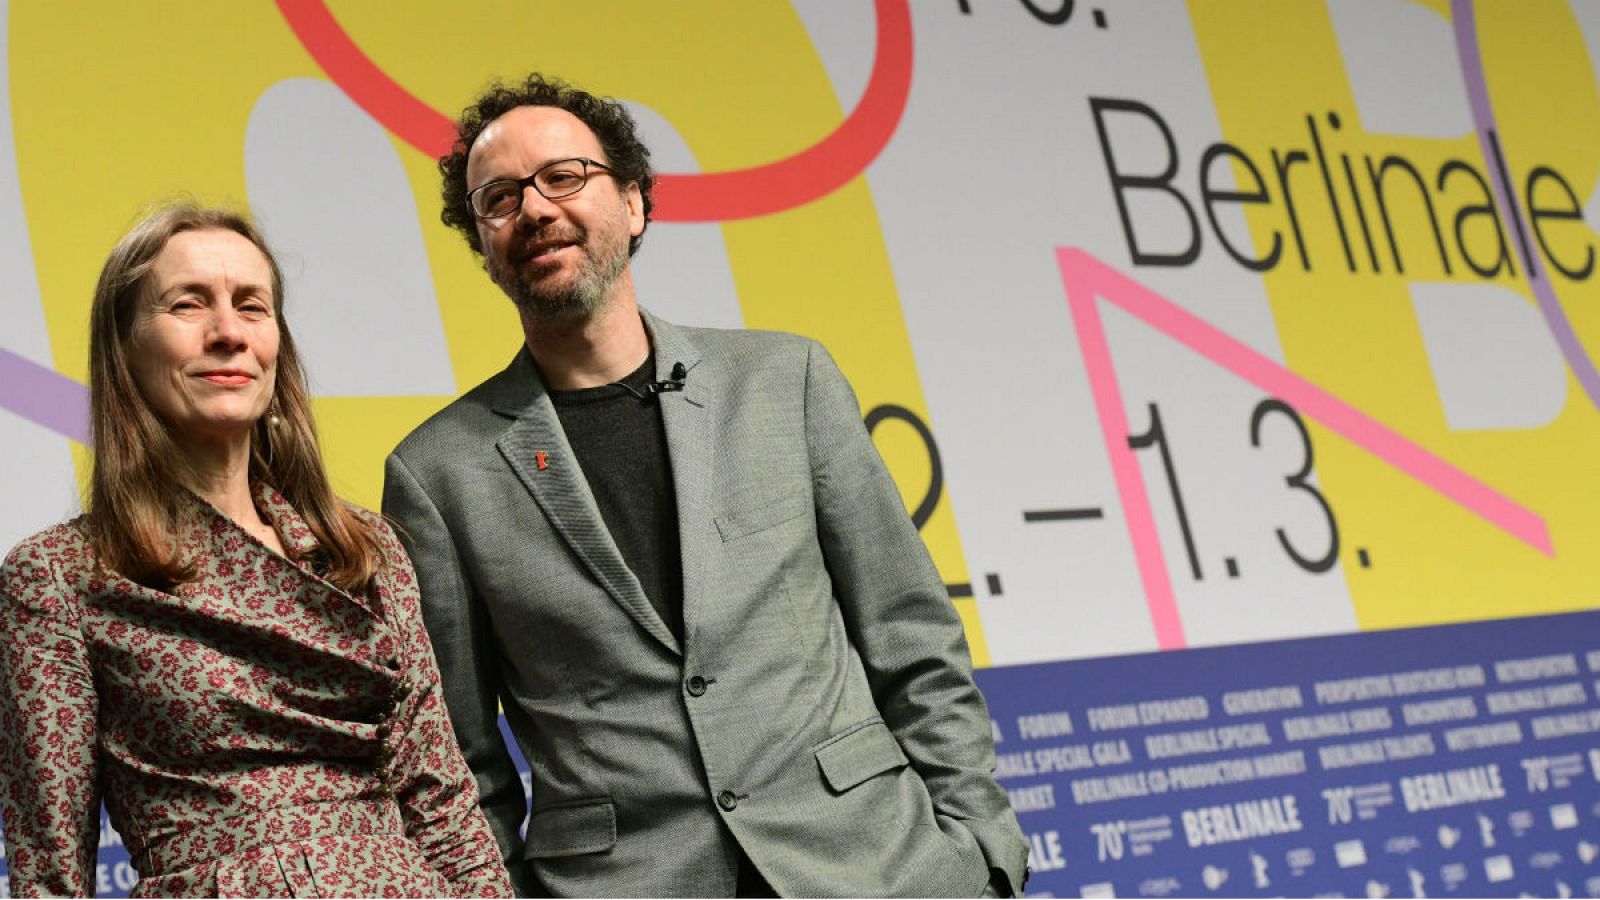 La directora gerente del festival de cine de Berlín (Berlinale), Mariette Rissenbeek y su director artístico, Carlo Chatrian, en la rueda de prensa de la presentación de su 70ª edición. El evento se desarrollará entre el 20 de febrero y el 1 de marzo